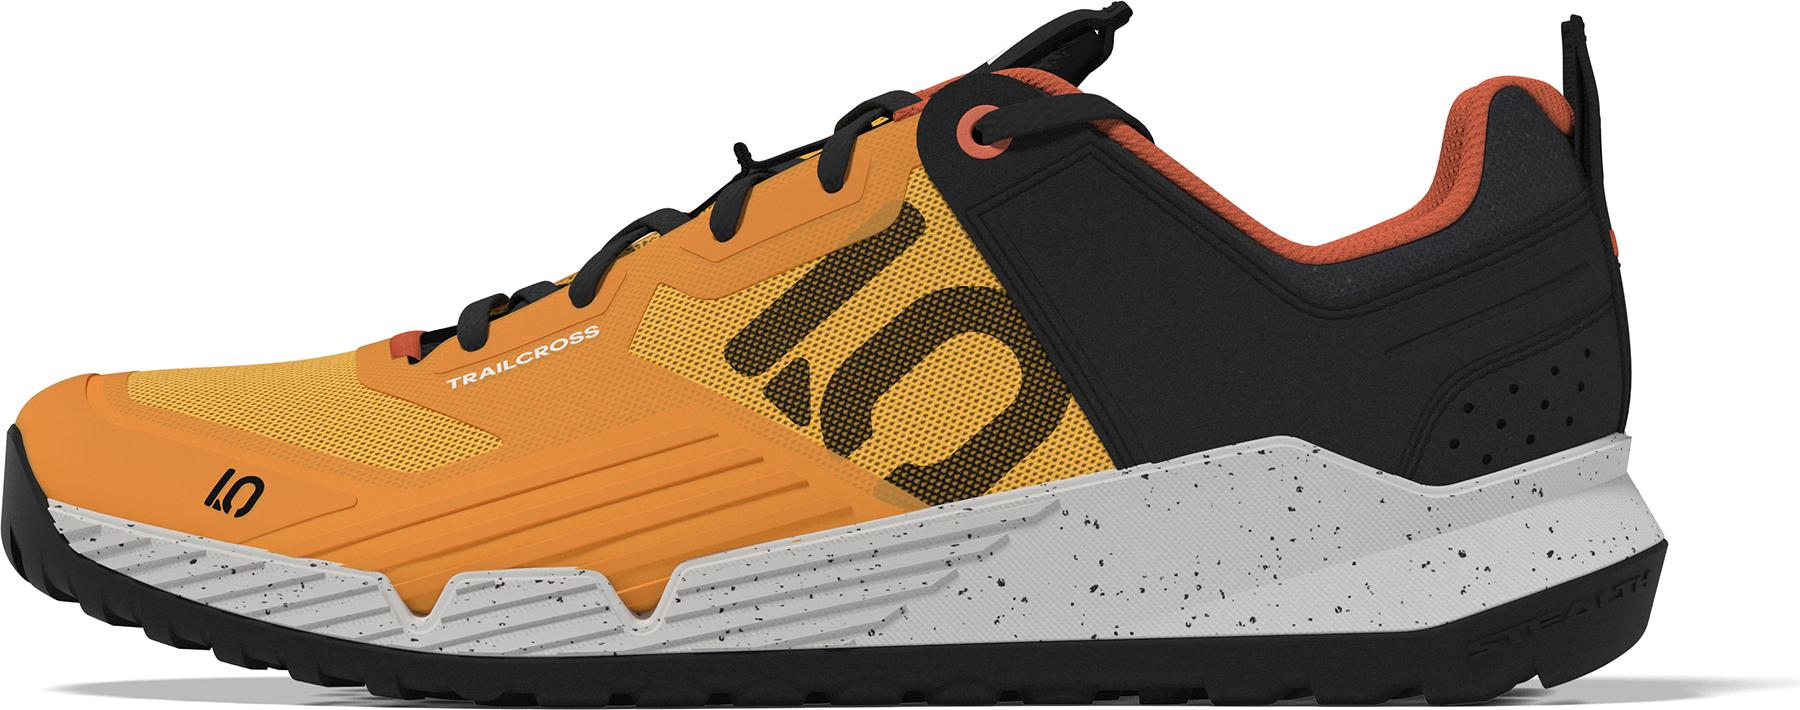 Five Ten Trailcross Xt Mtb Shoes  Solar Gold/core Black/impact Orange